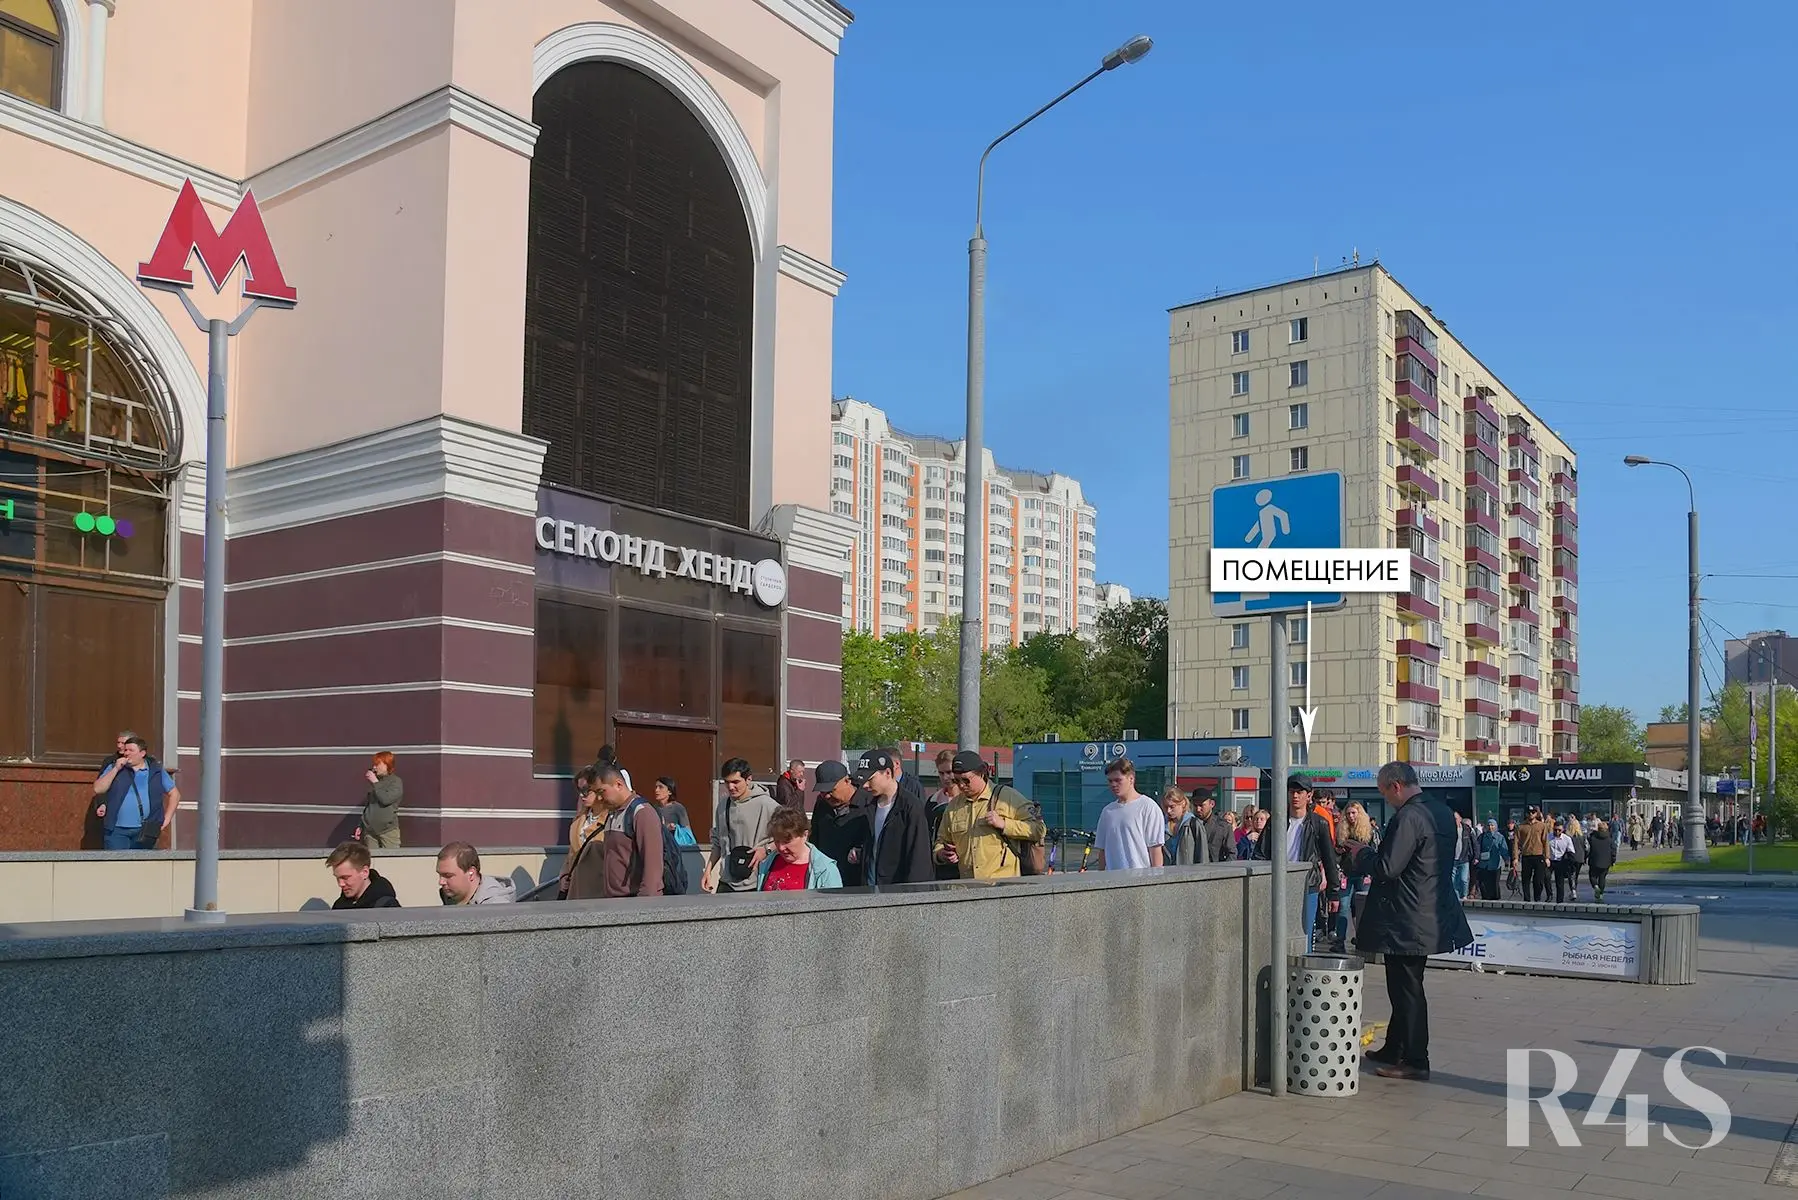 Продажа готового арендного бизнеса площадью 22 м2 в Москве: Уральская, 1 R4S | Realty4Sale